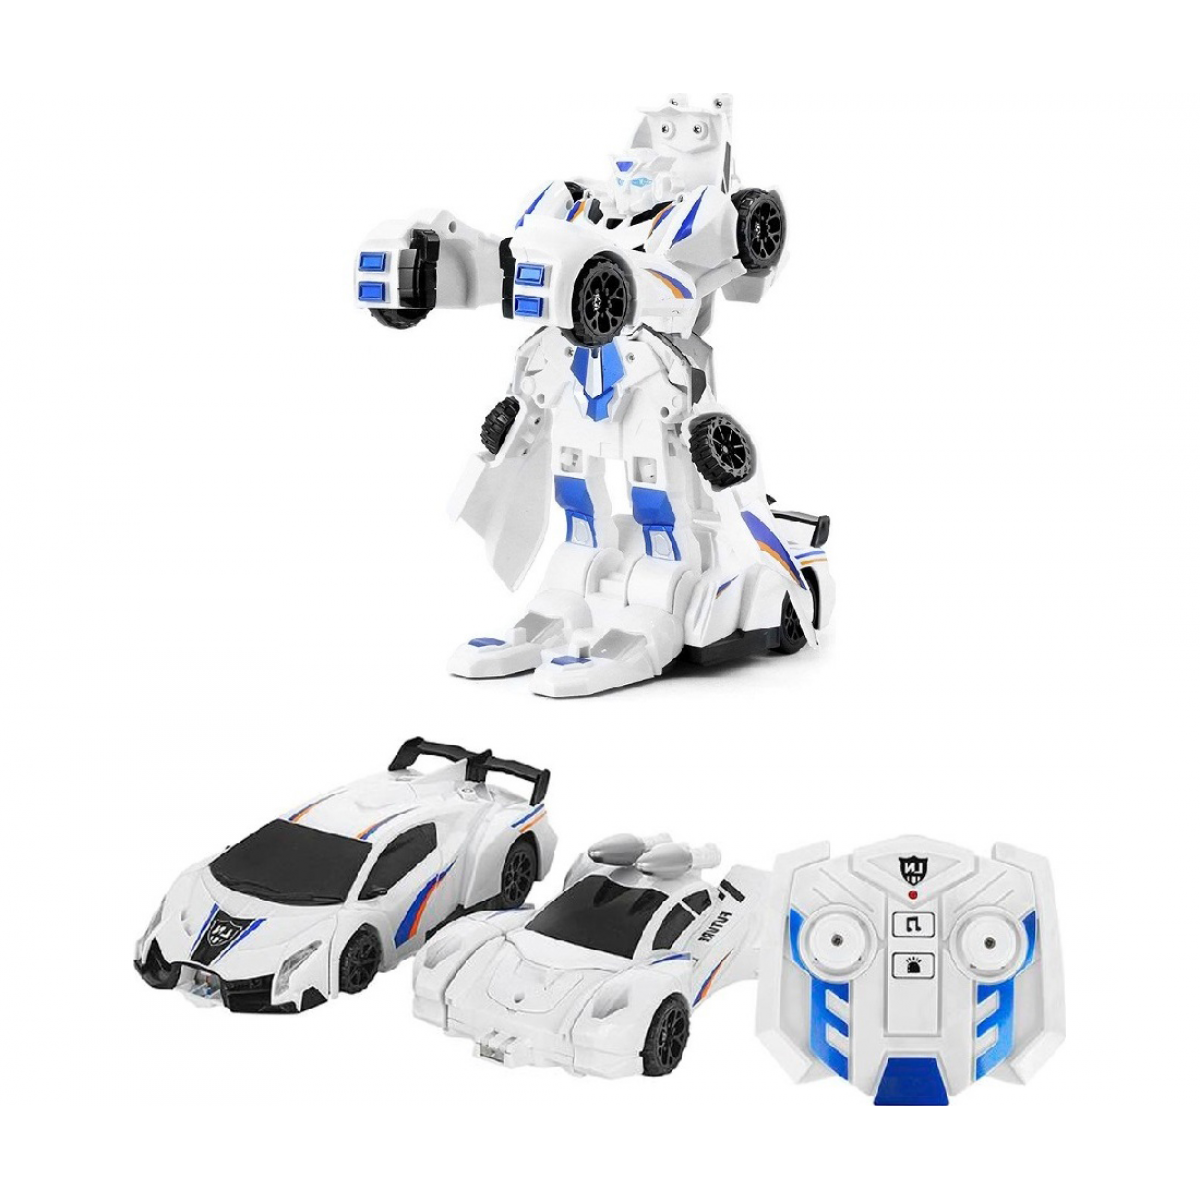 фото Робот future 2в1 на р/у (свет,звук,движение)в коробке собирается из 2-х машин zya-a2768 noname